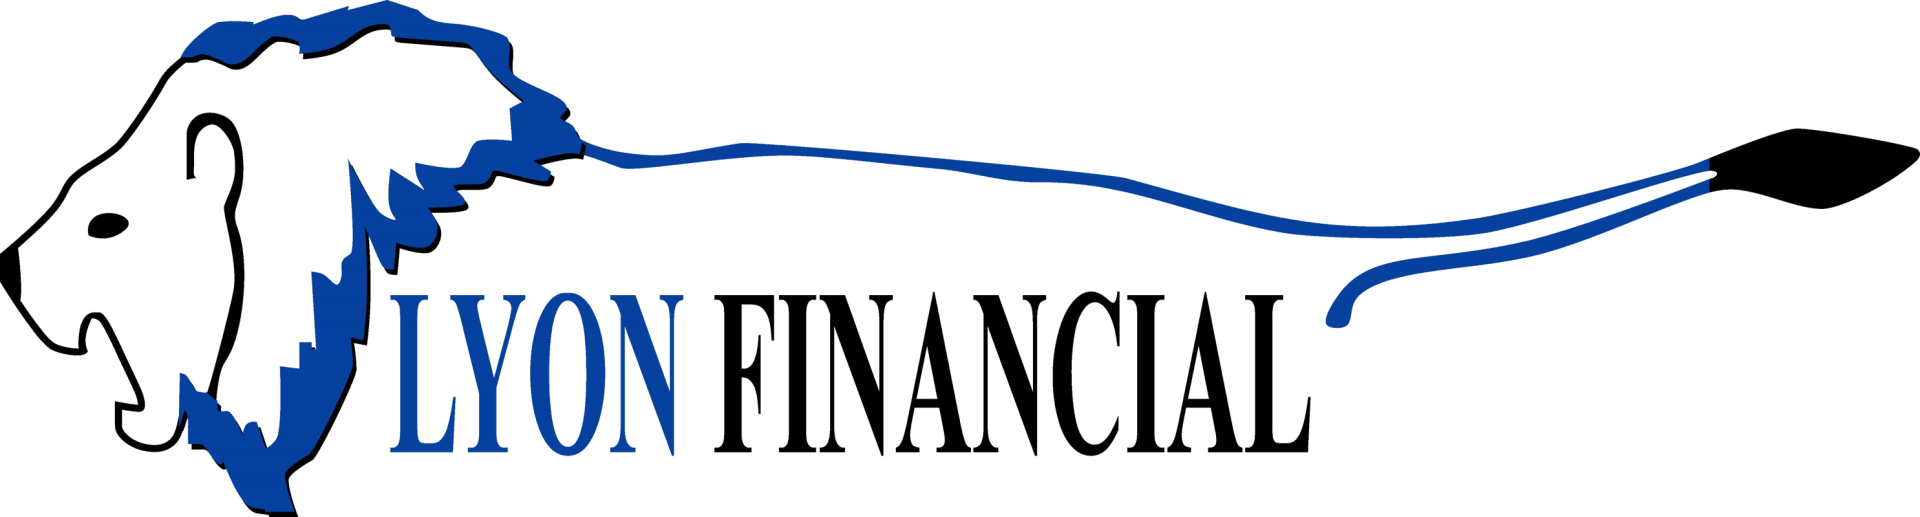 Lyon Financial Logo